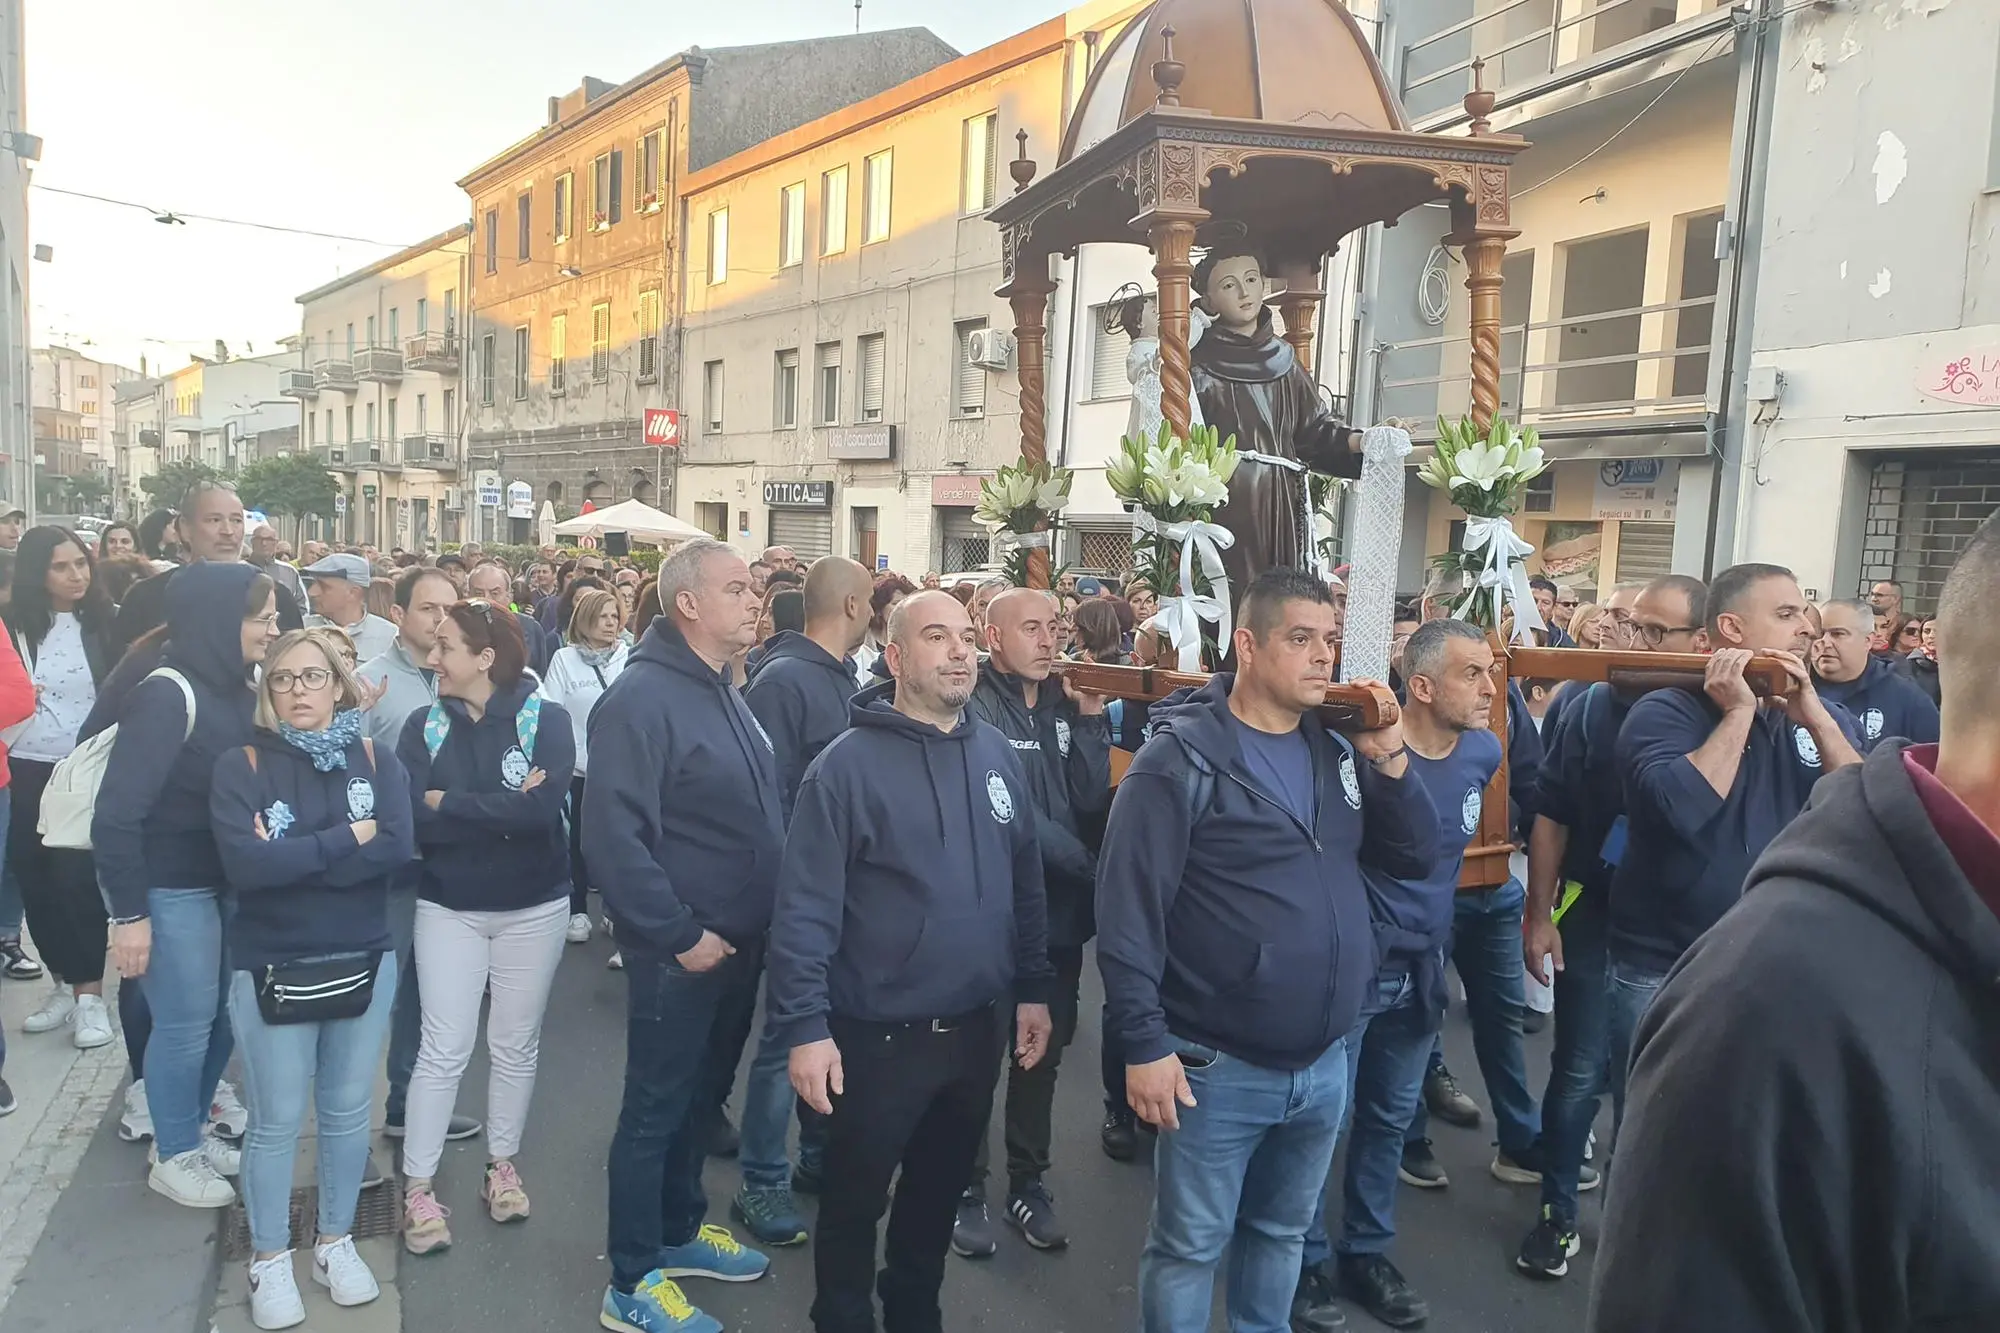 La processione (foto Oggianu)